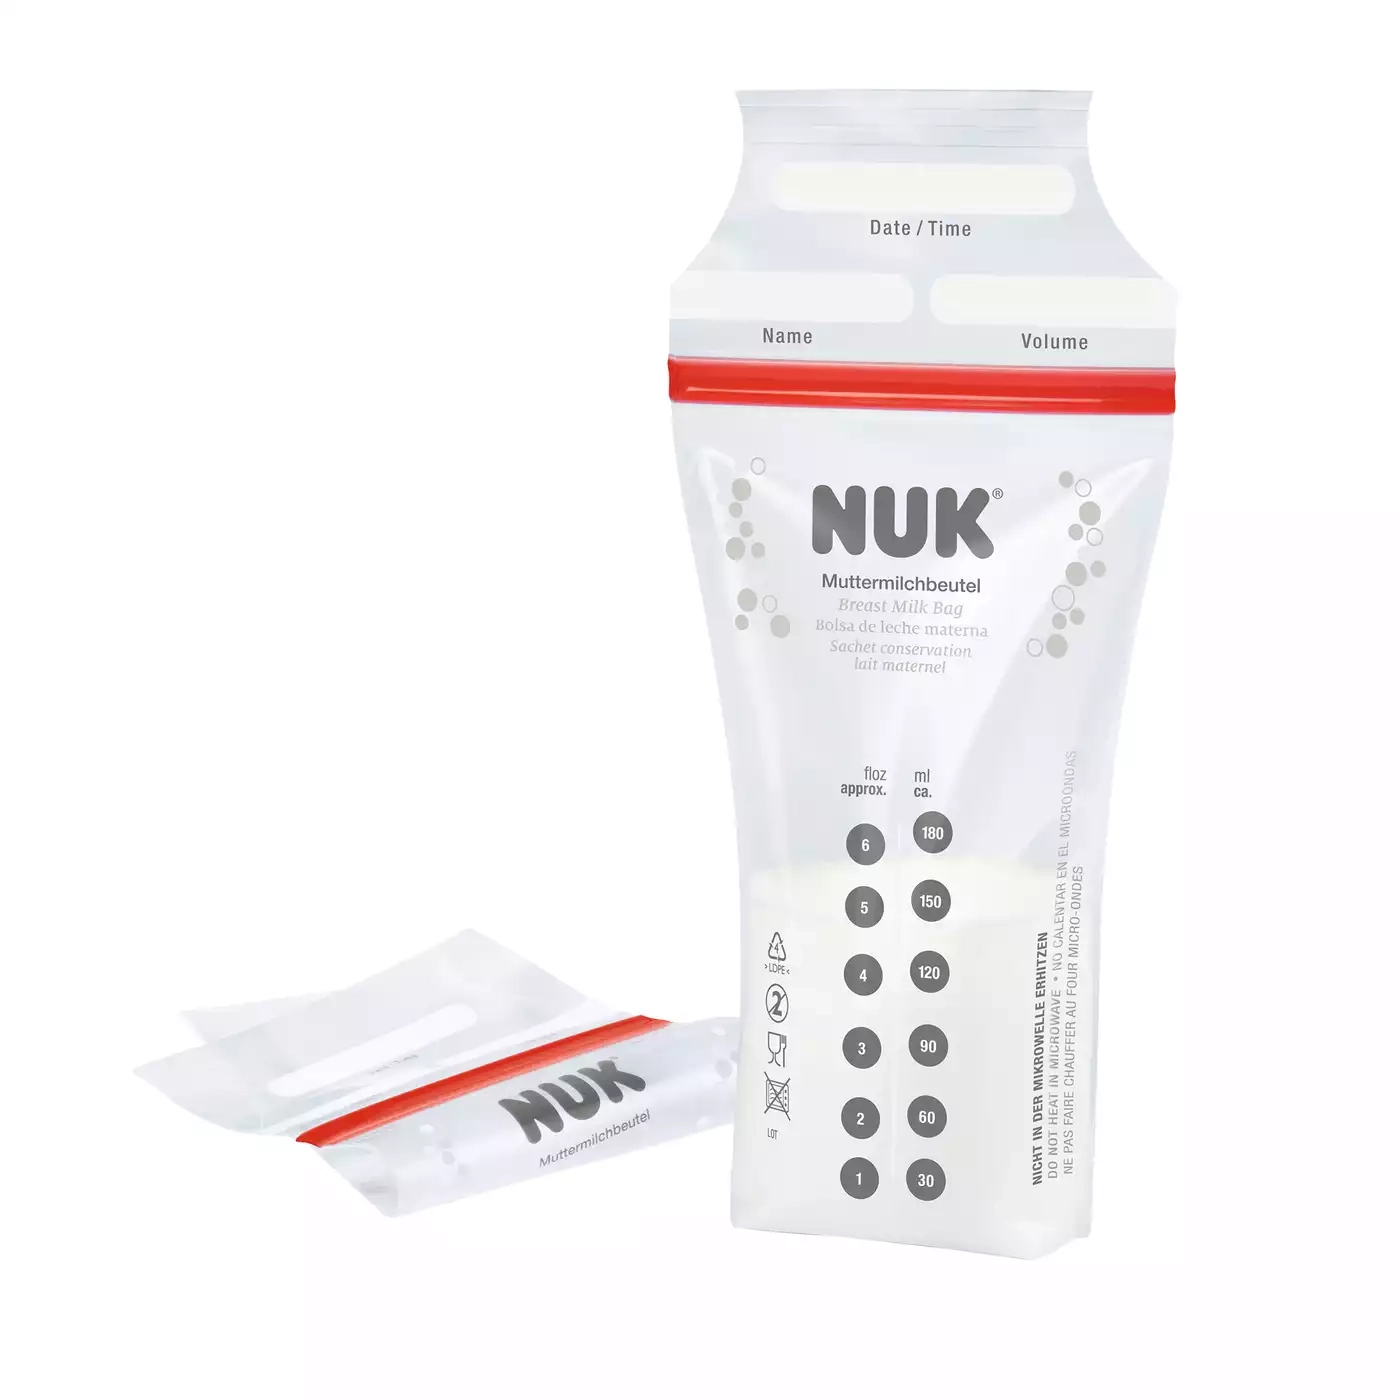 Muttermilchbeutel NUK 2000574096001 1